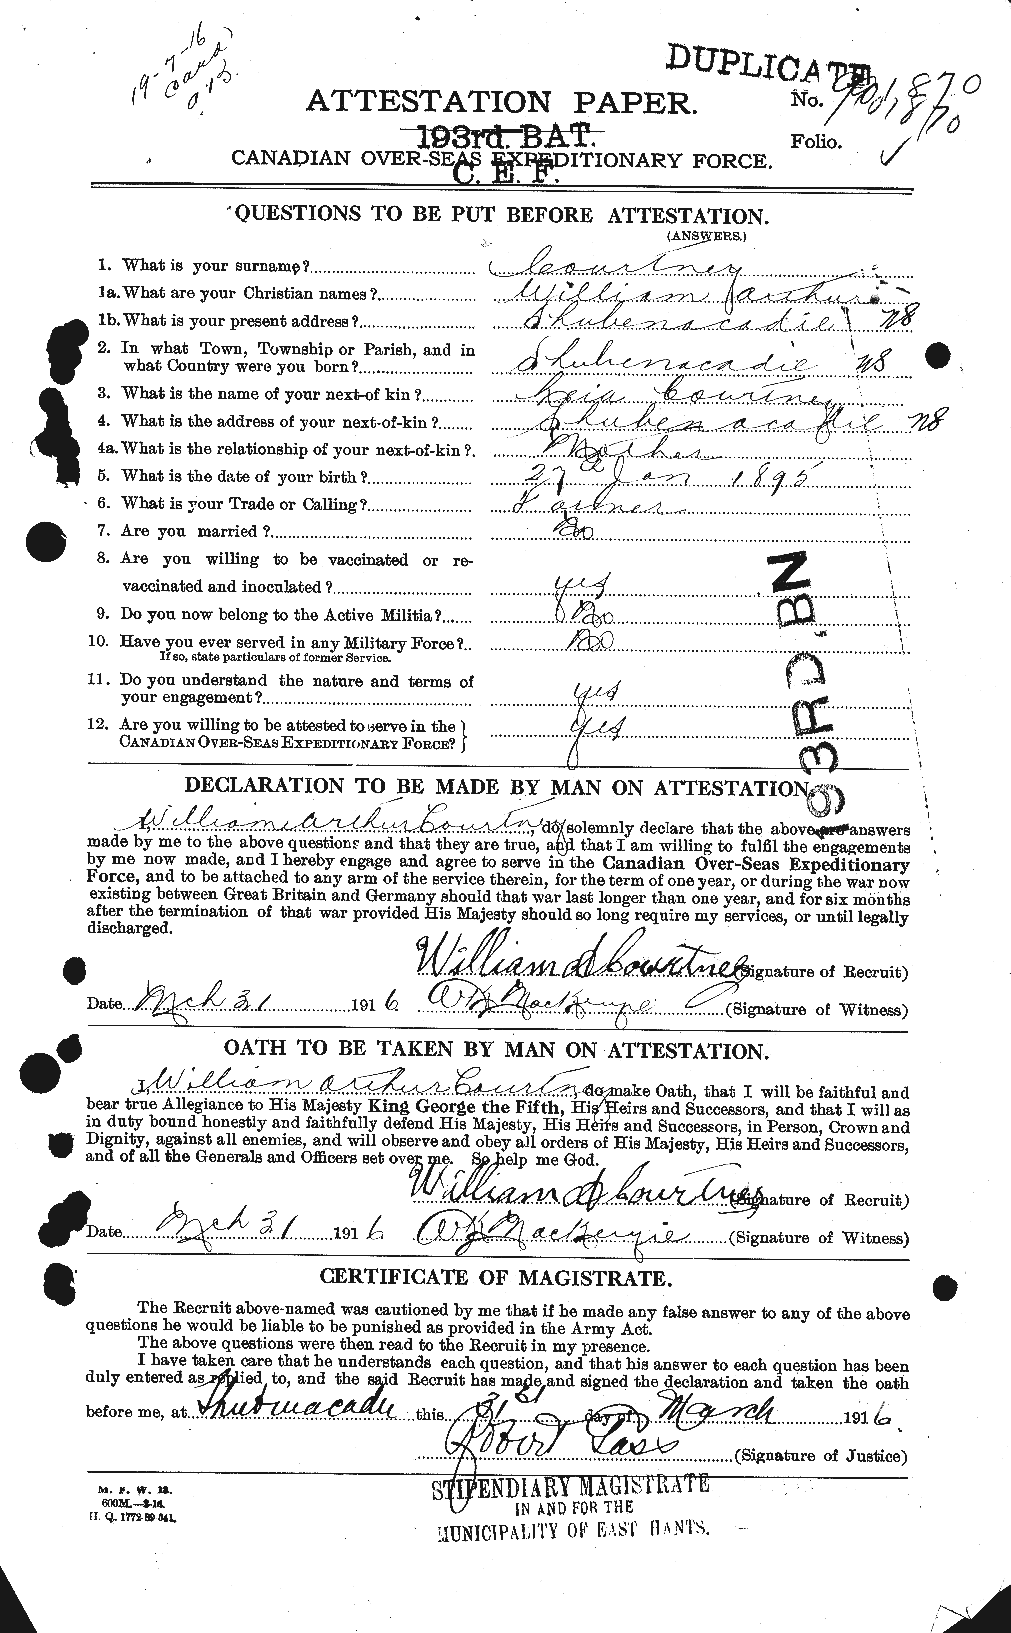 Dossiers du Personnel de la Première Guerre mondiale - CEC 059088a